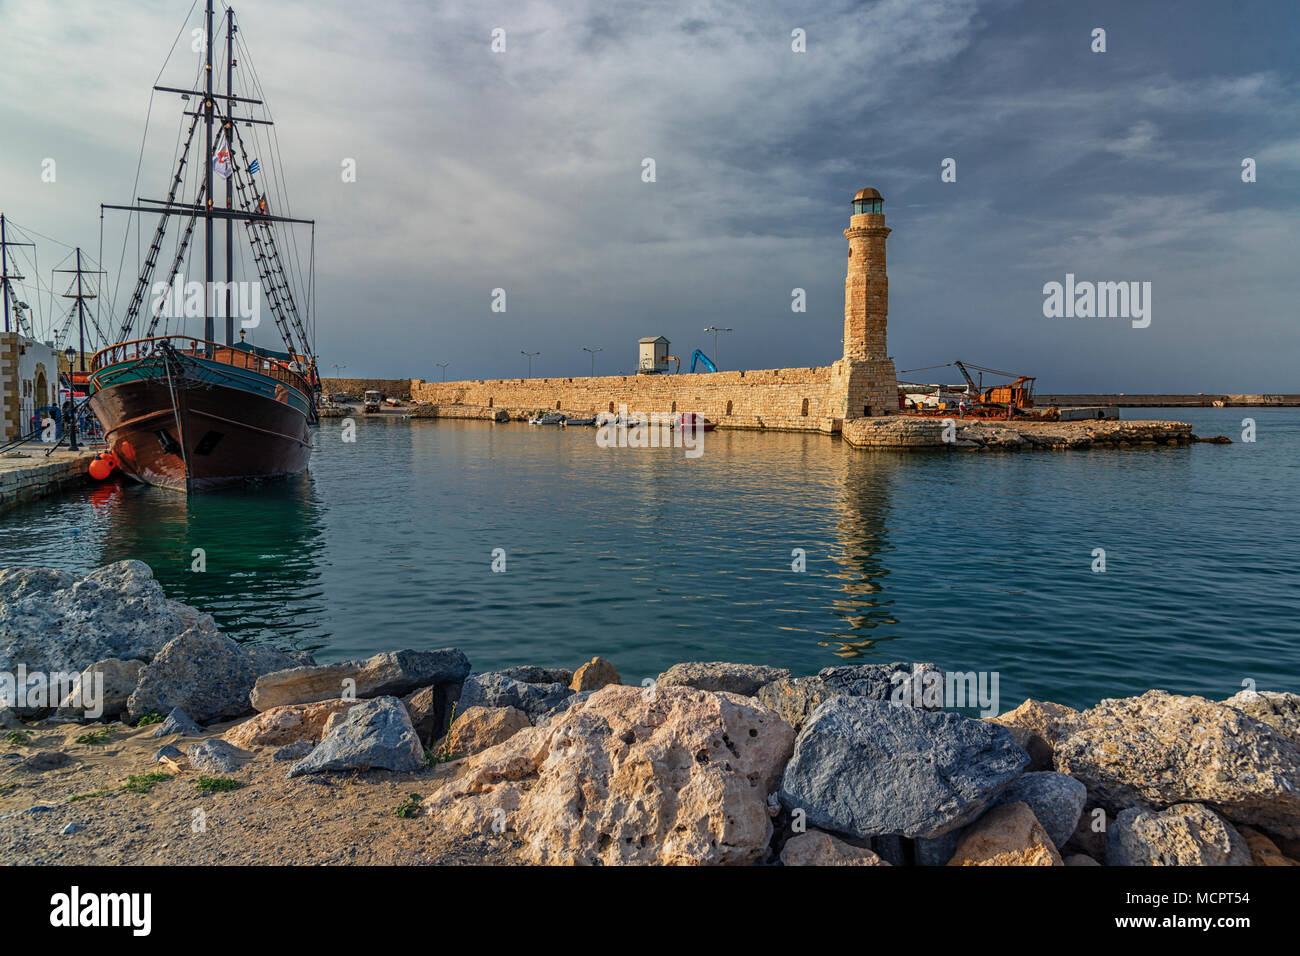 Der ägyptische Leuchtturm im venezianischen Hafen in Rethymnon auf Kreta Stock Photo